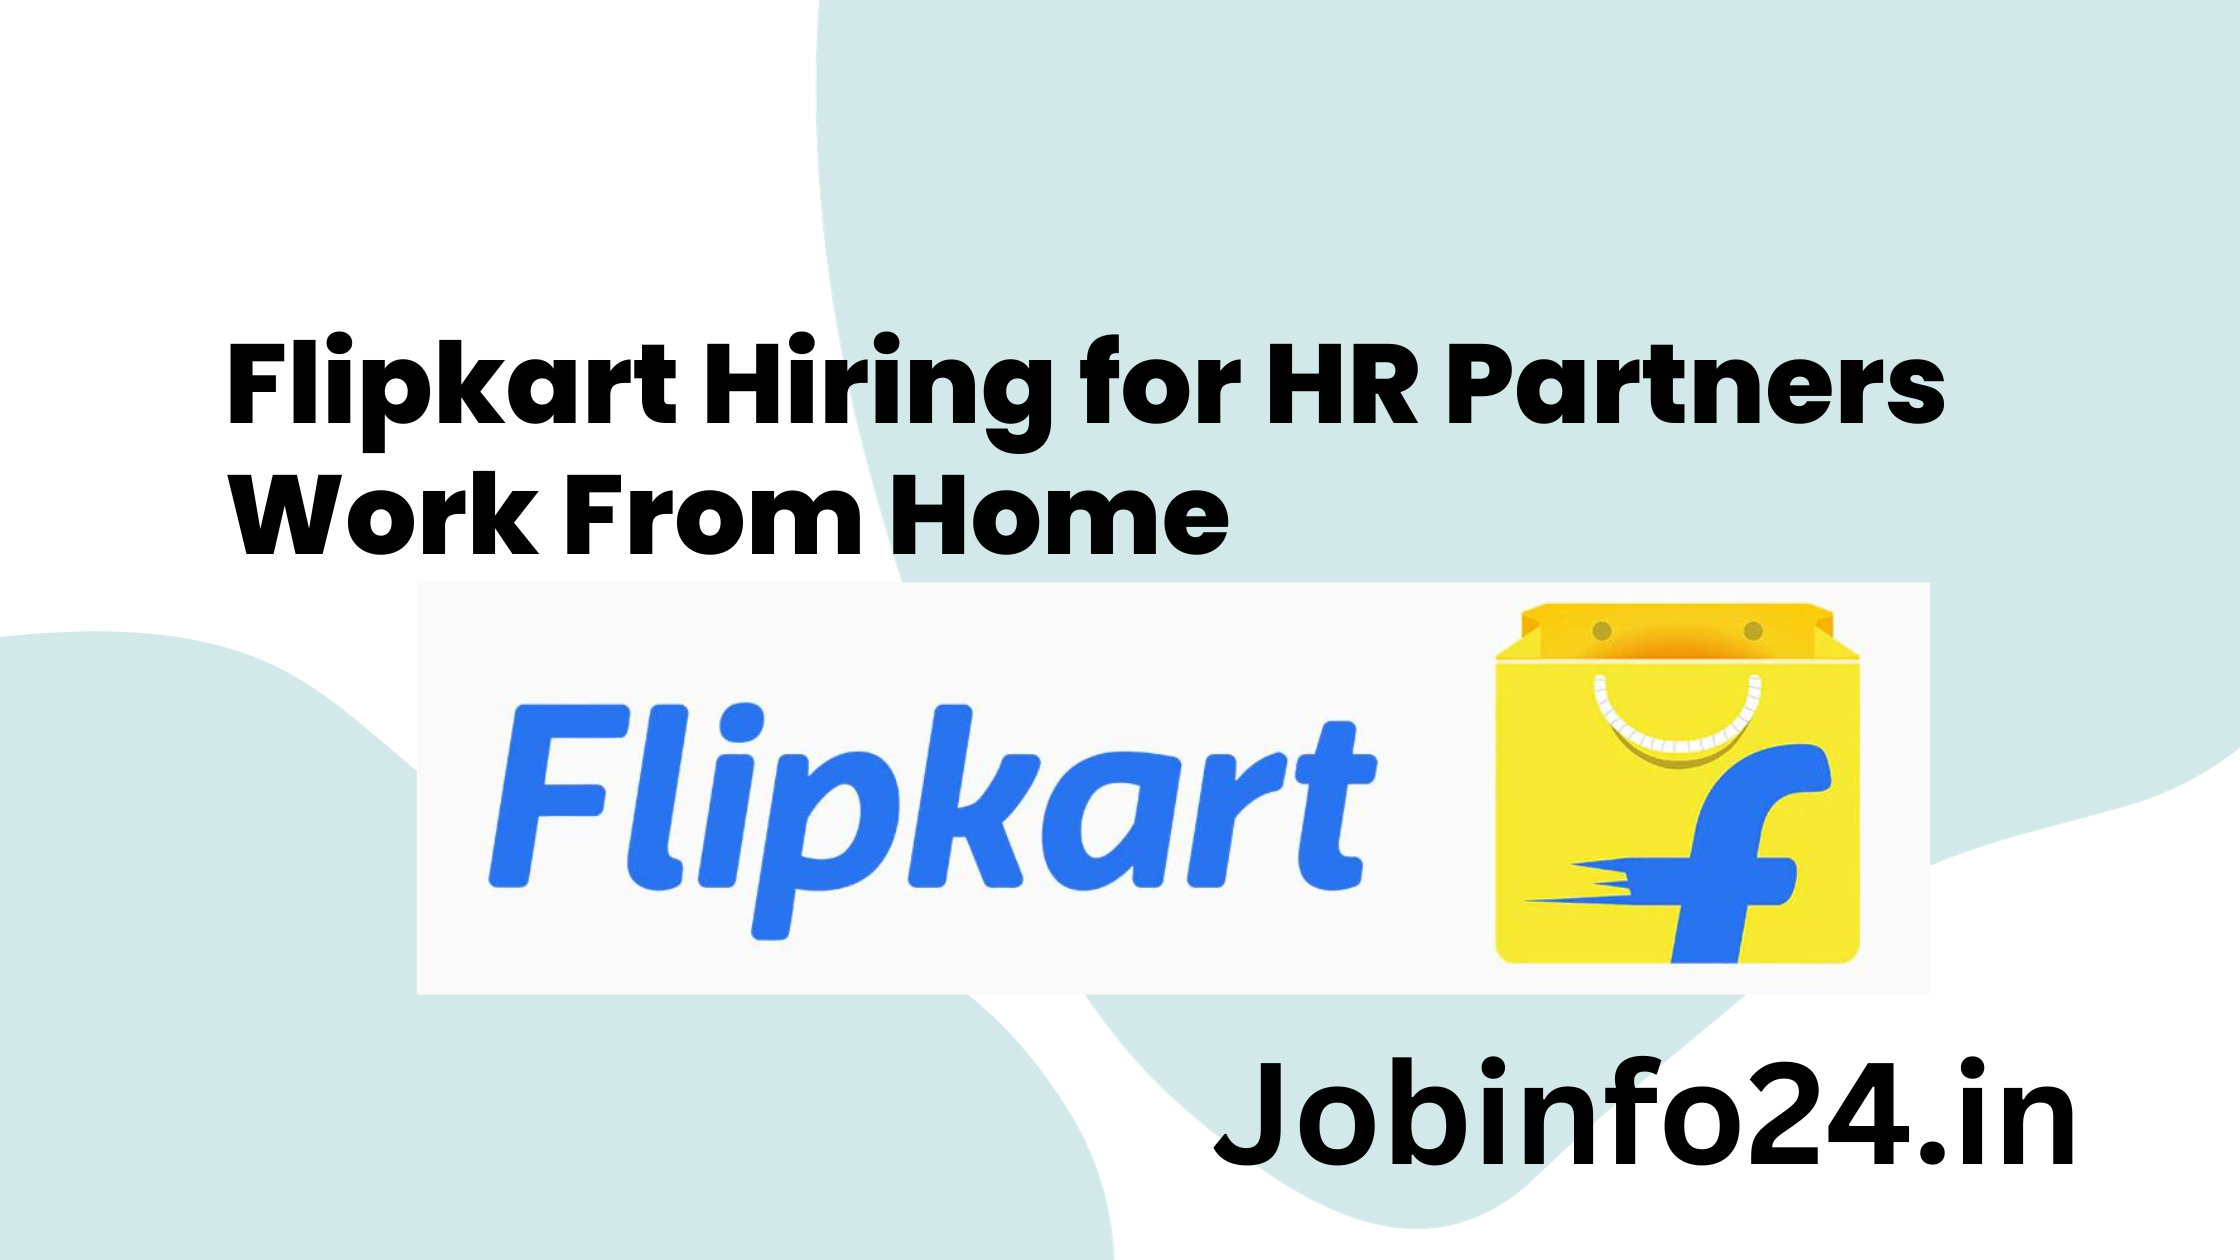 Flipkart Hiring for HR Partners Work From Home